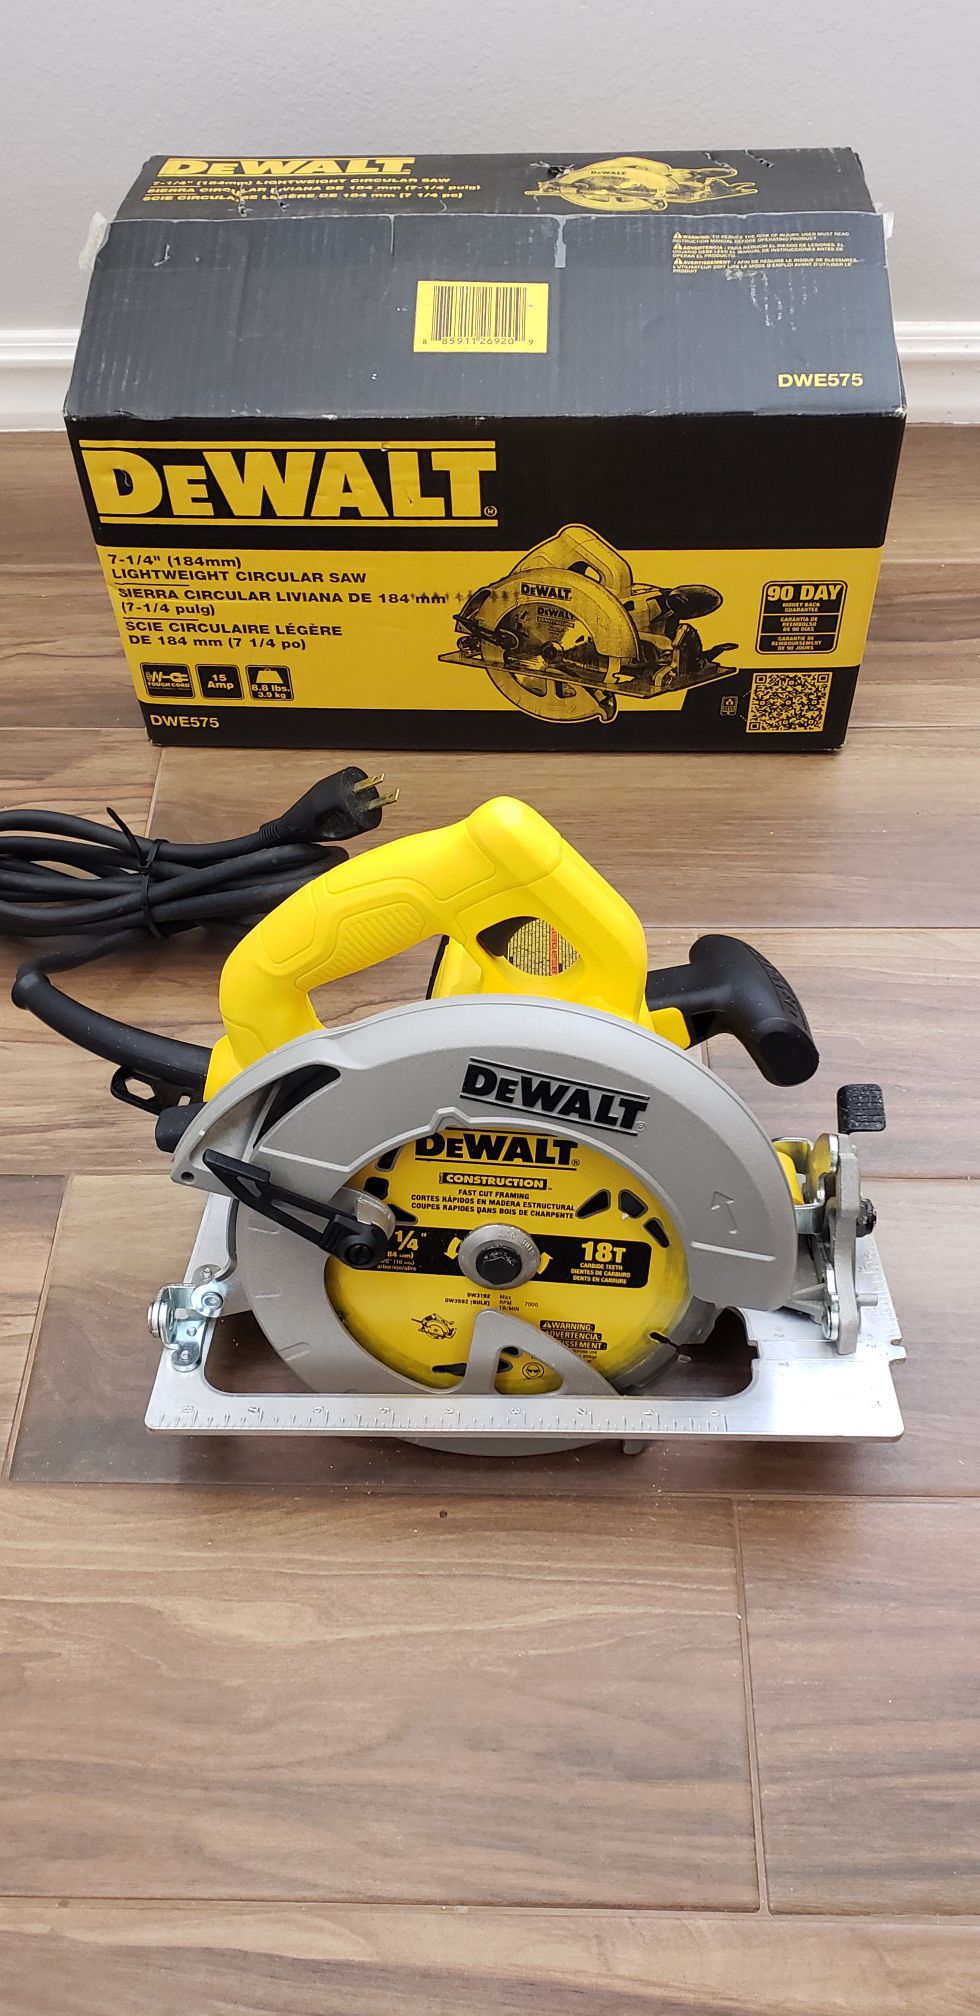 Dewalt 7-1/4in electric circular saw